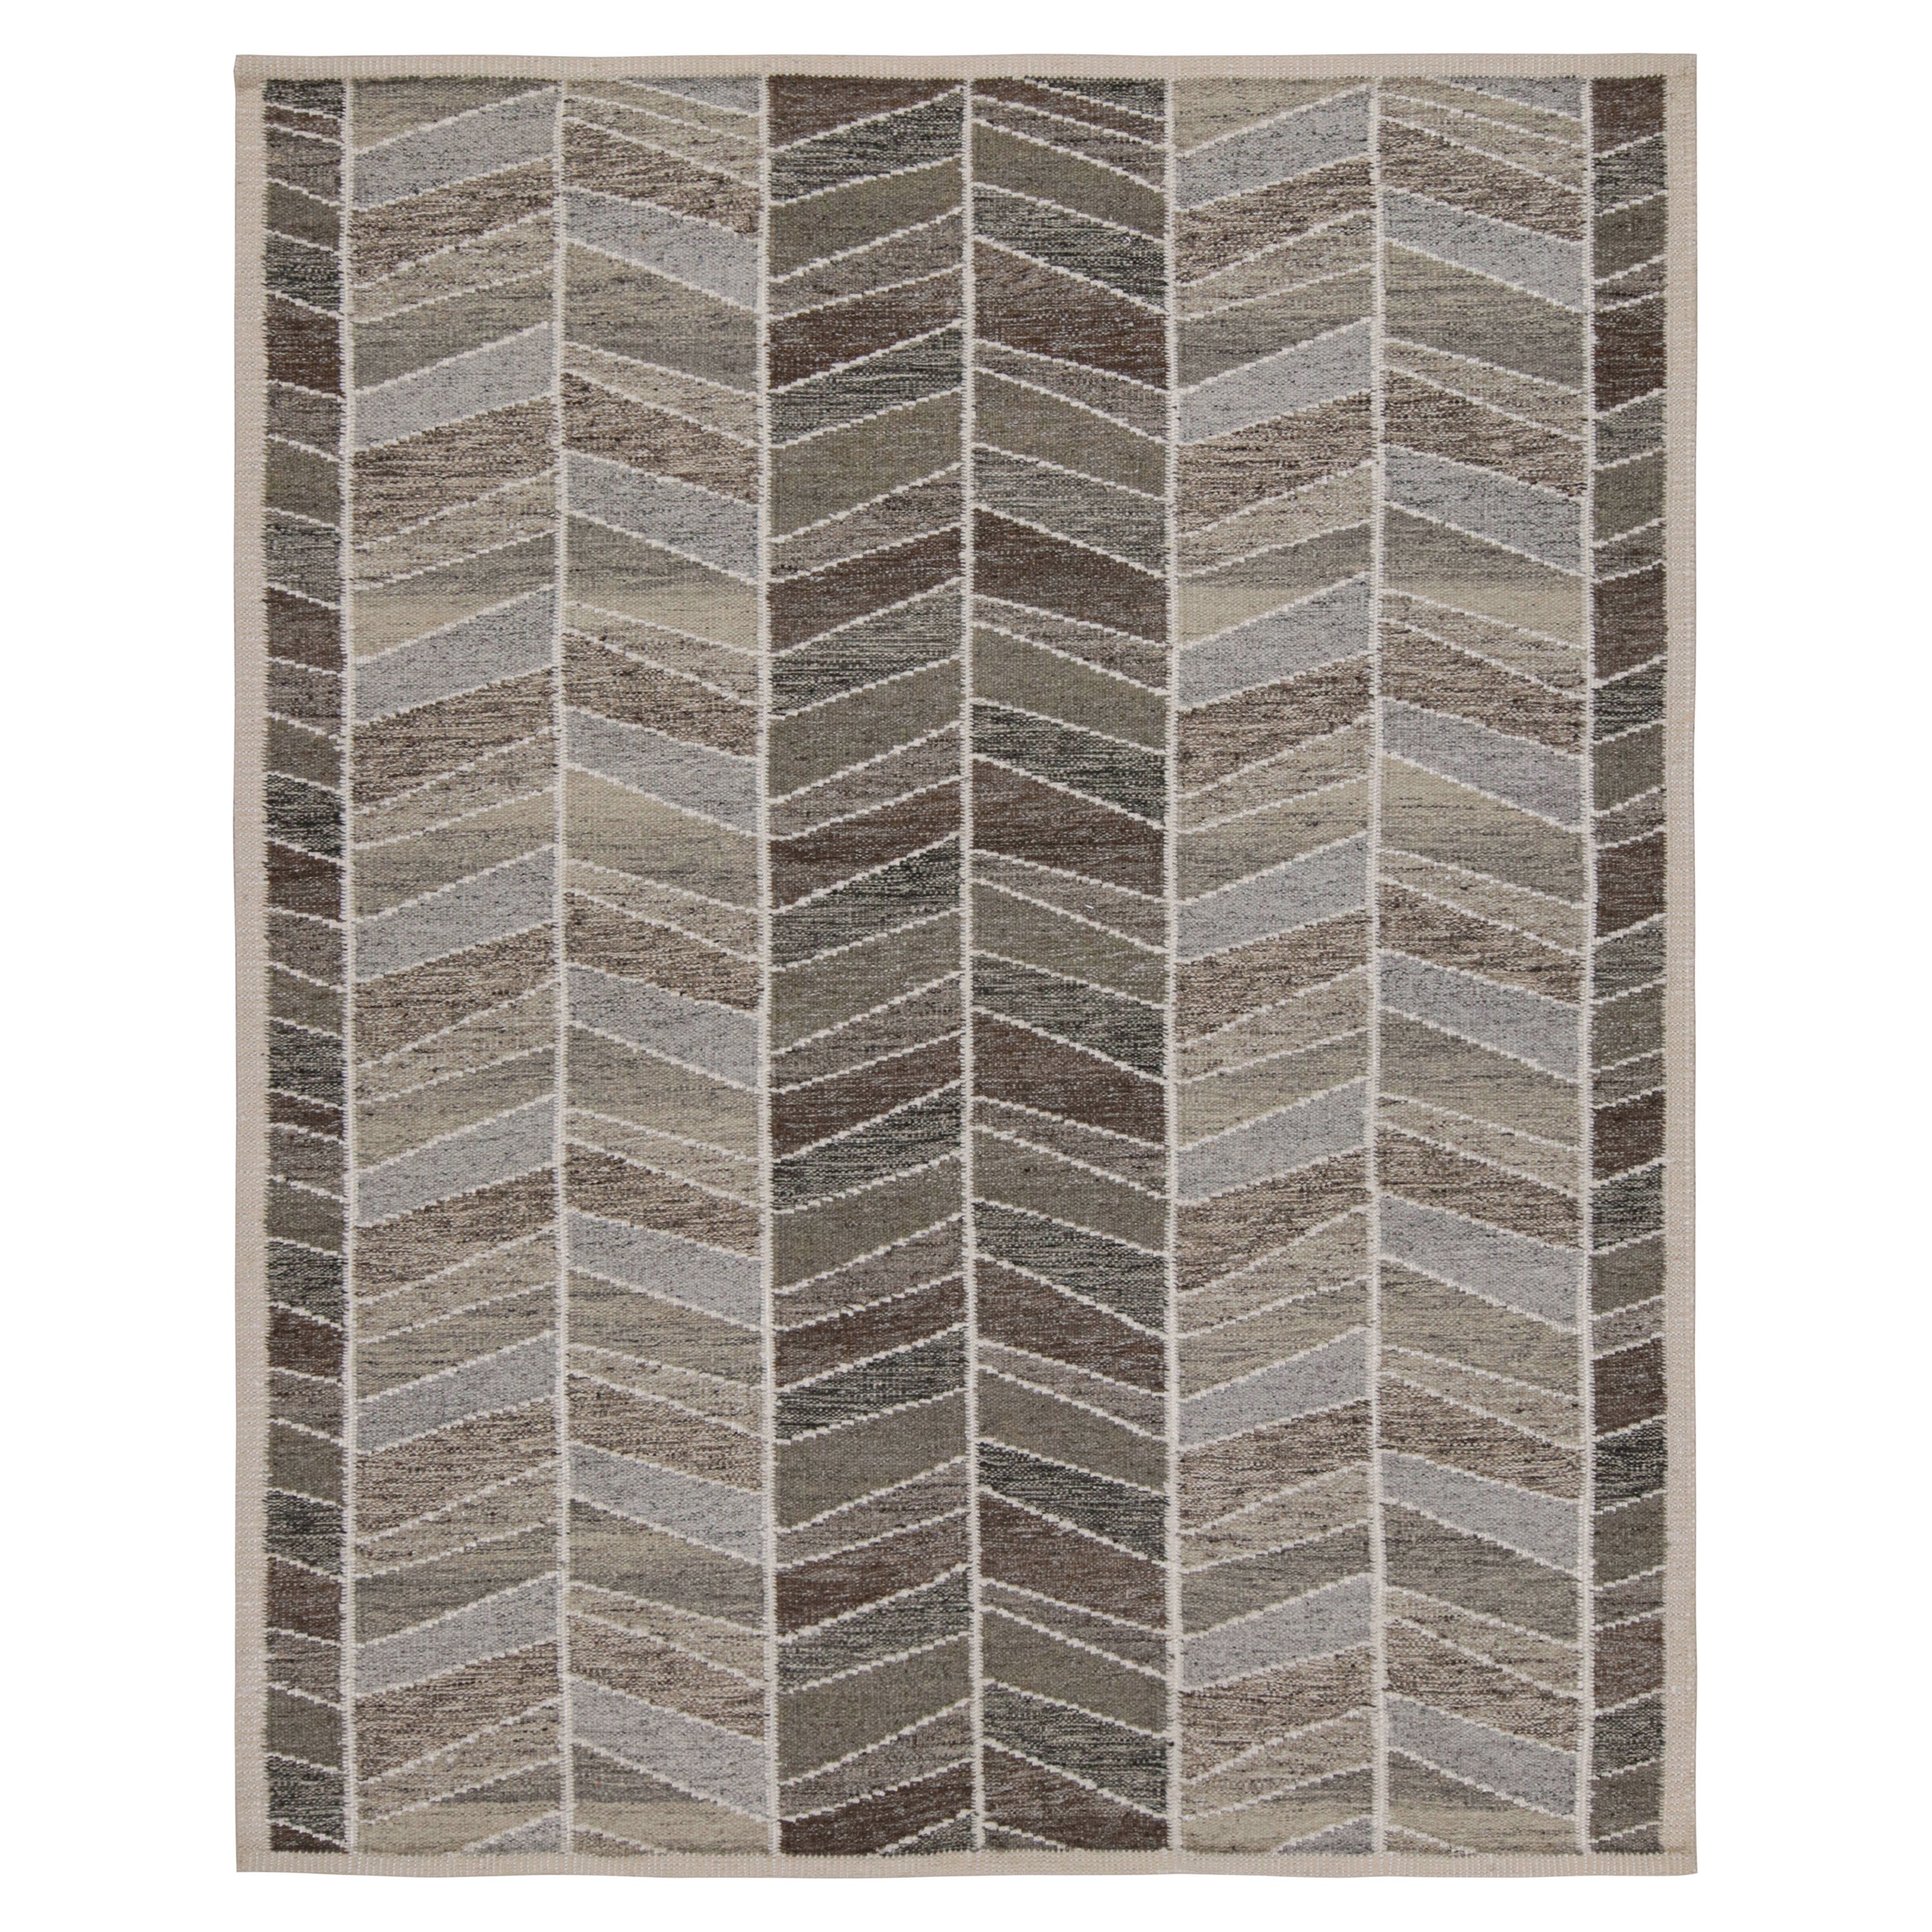 Rug & Kilim's Teppich im skandinavischen Stil mit geometrischen Mustern